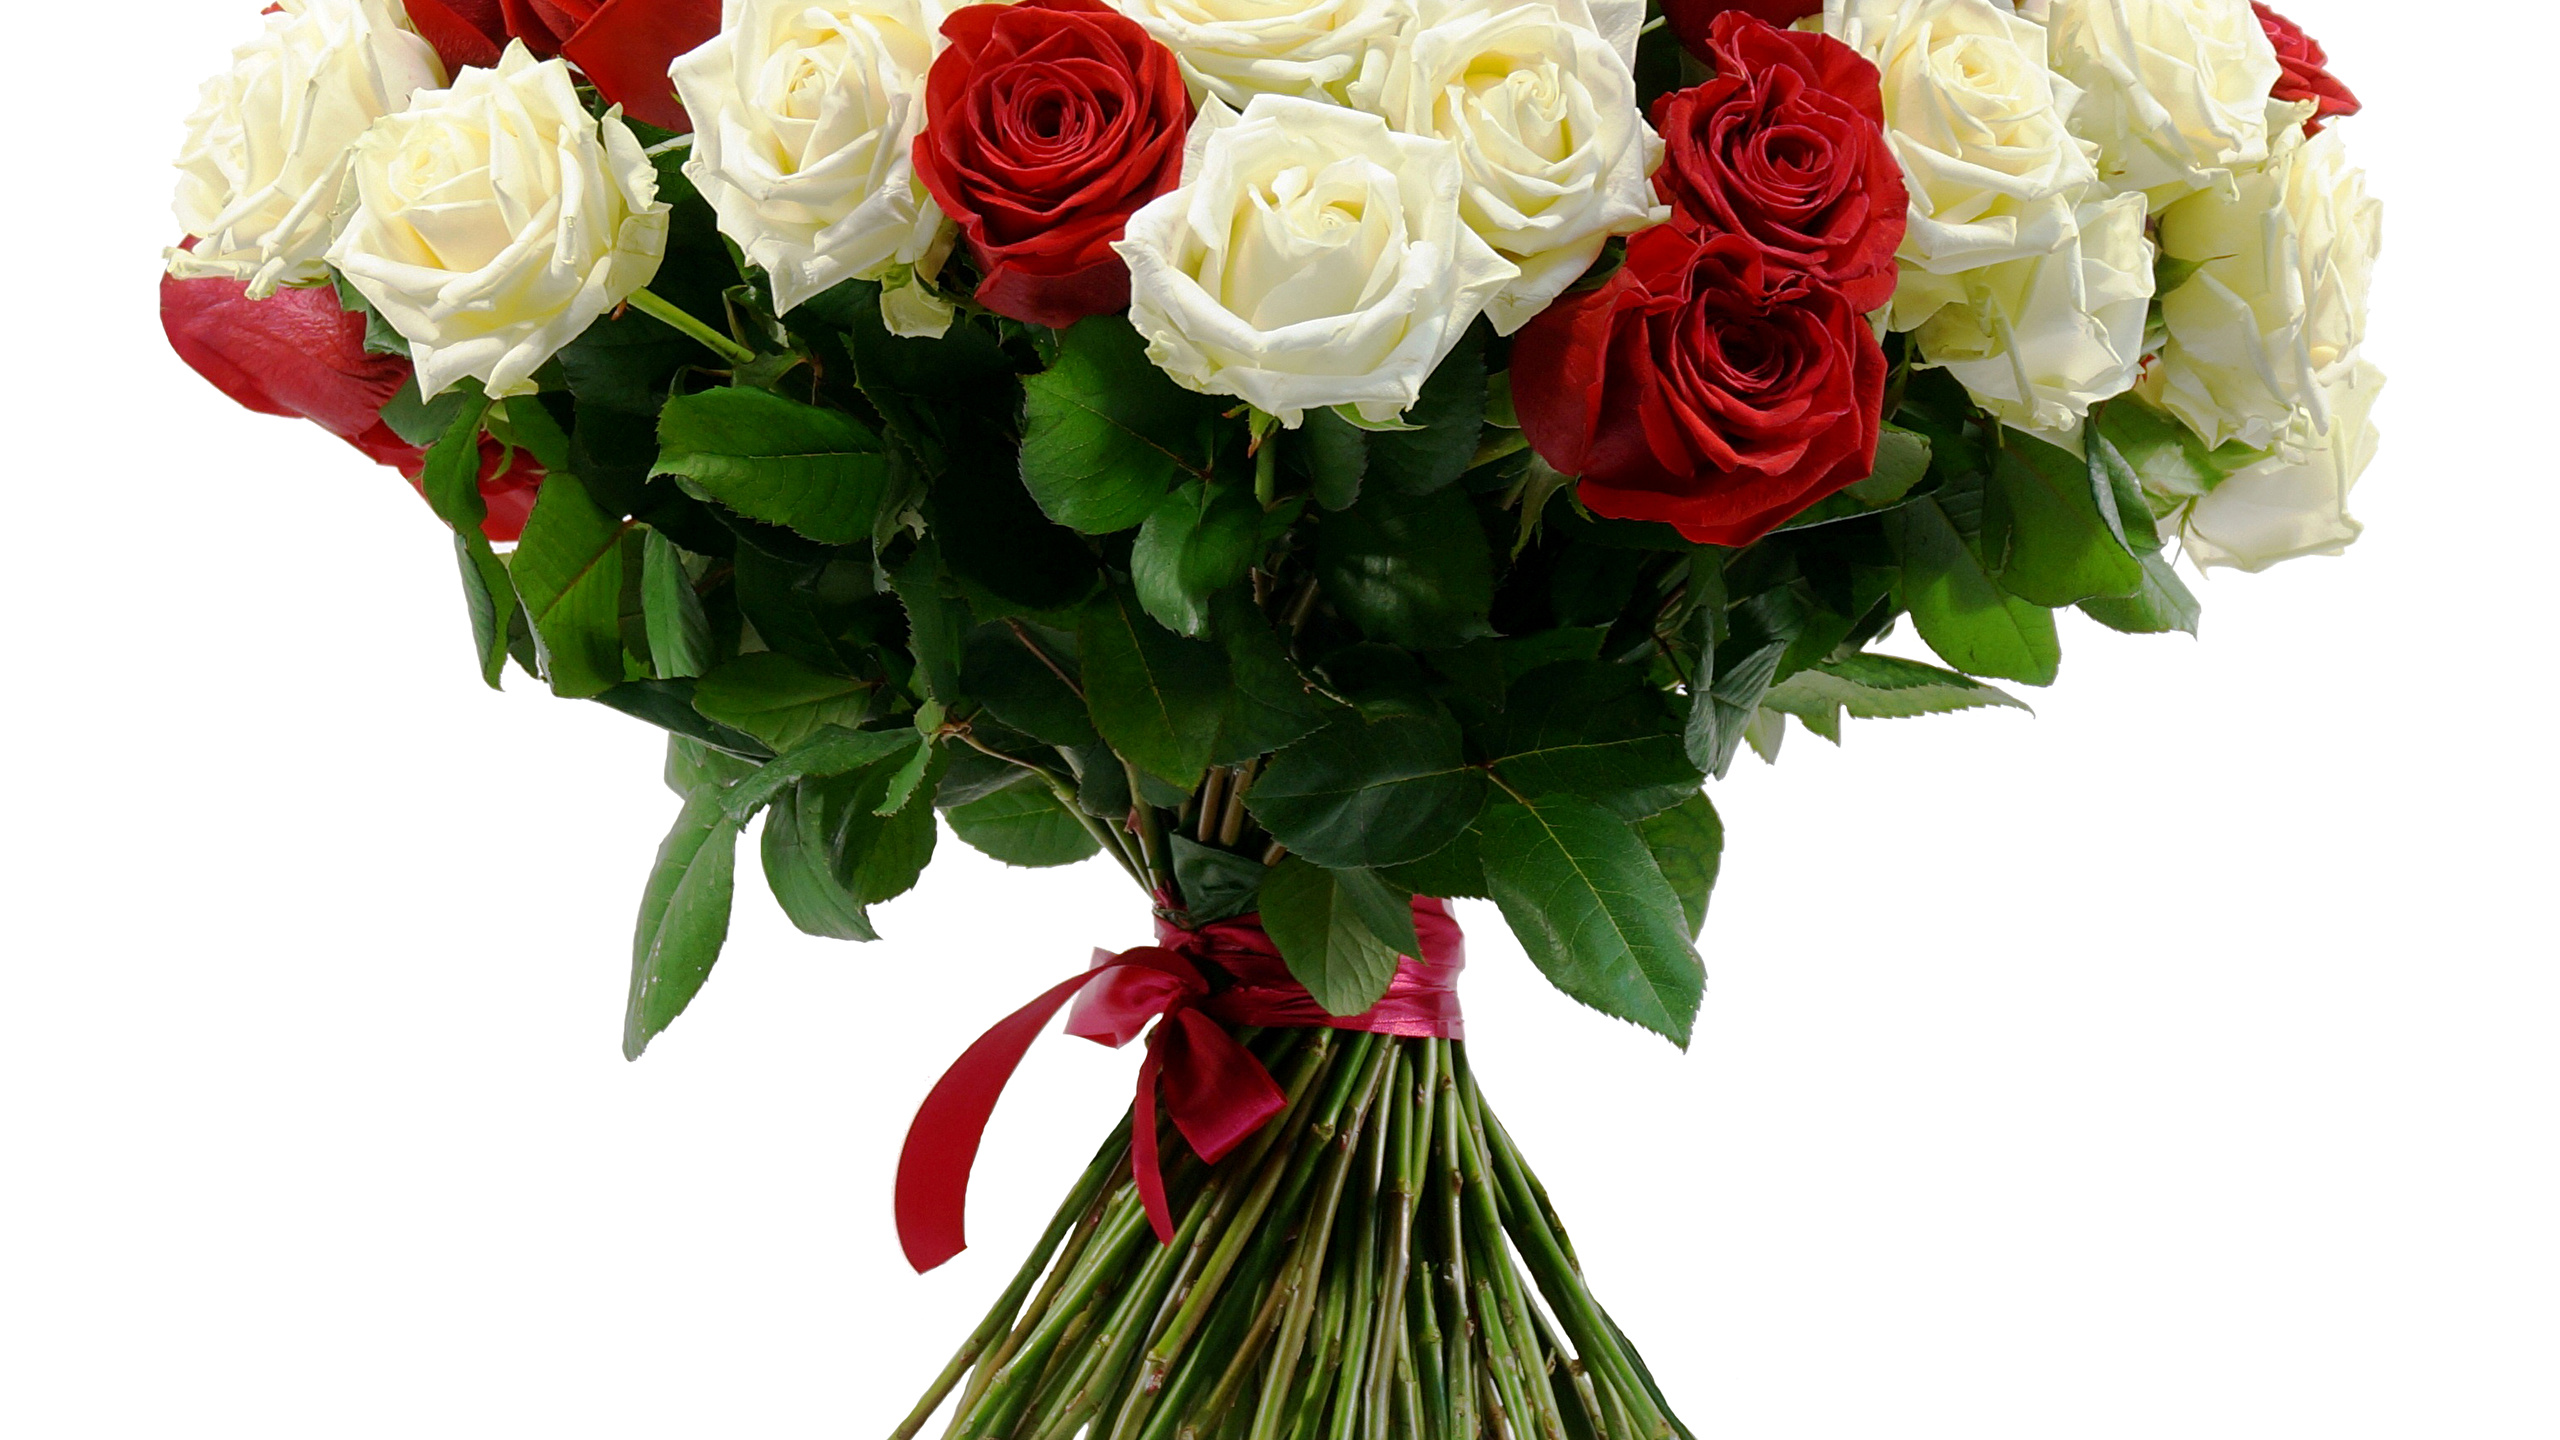 Фото Букеты Розы Цветы Белый фон 2560x1440